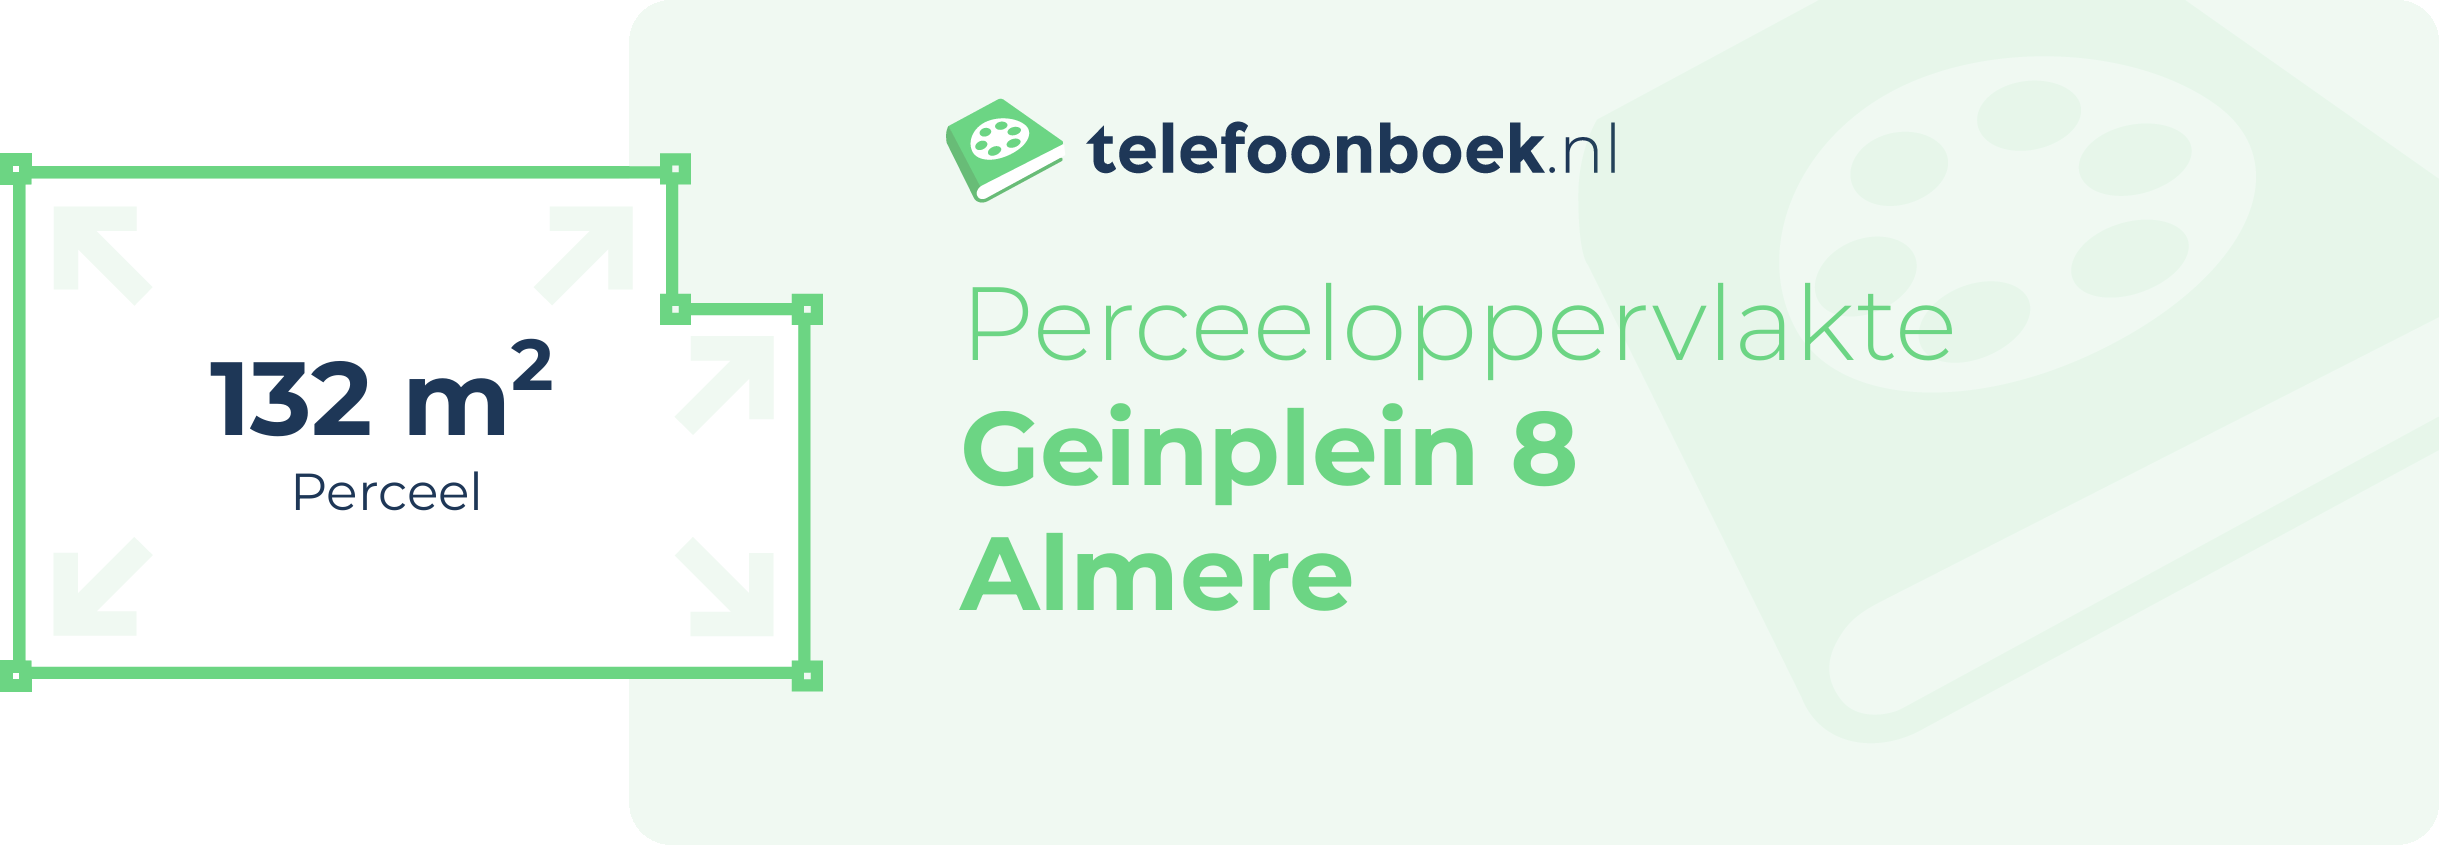 Perceeloppervlakte Geinplein 8 Almere